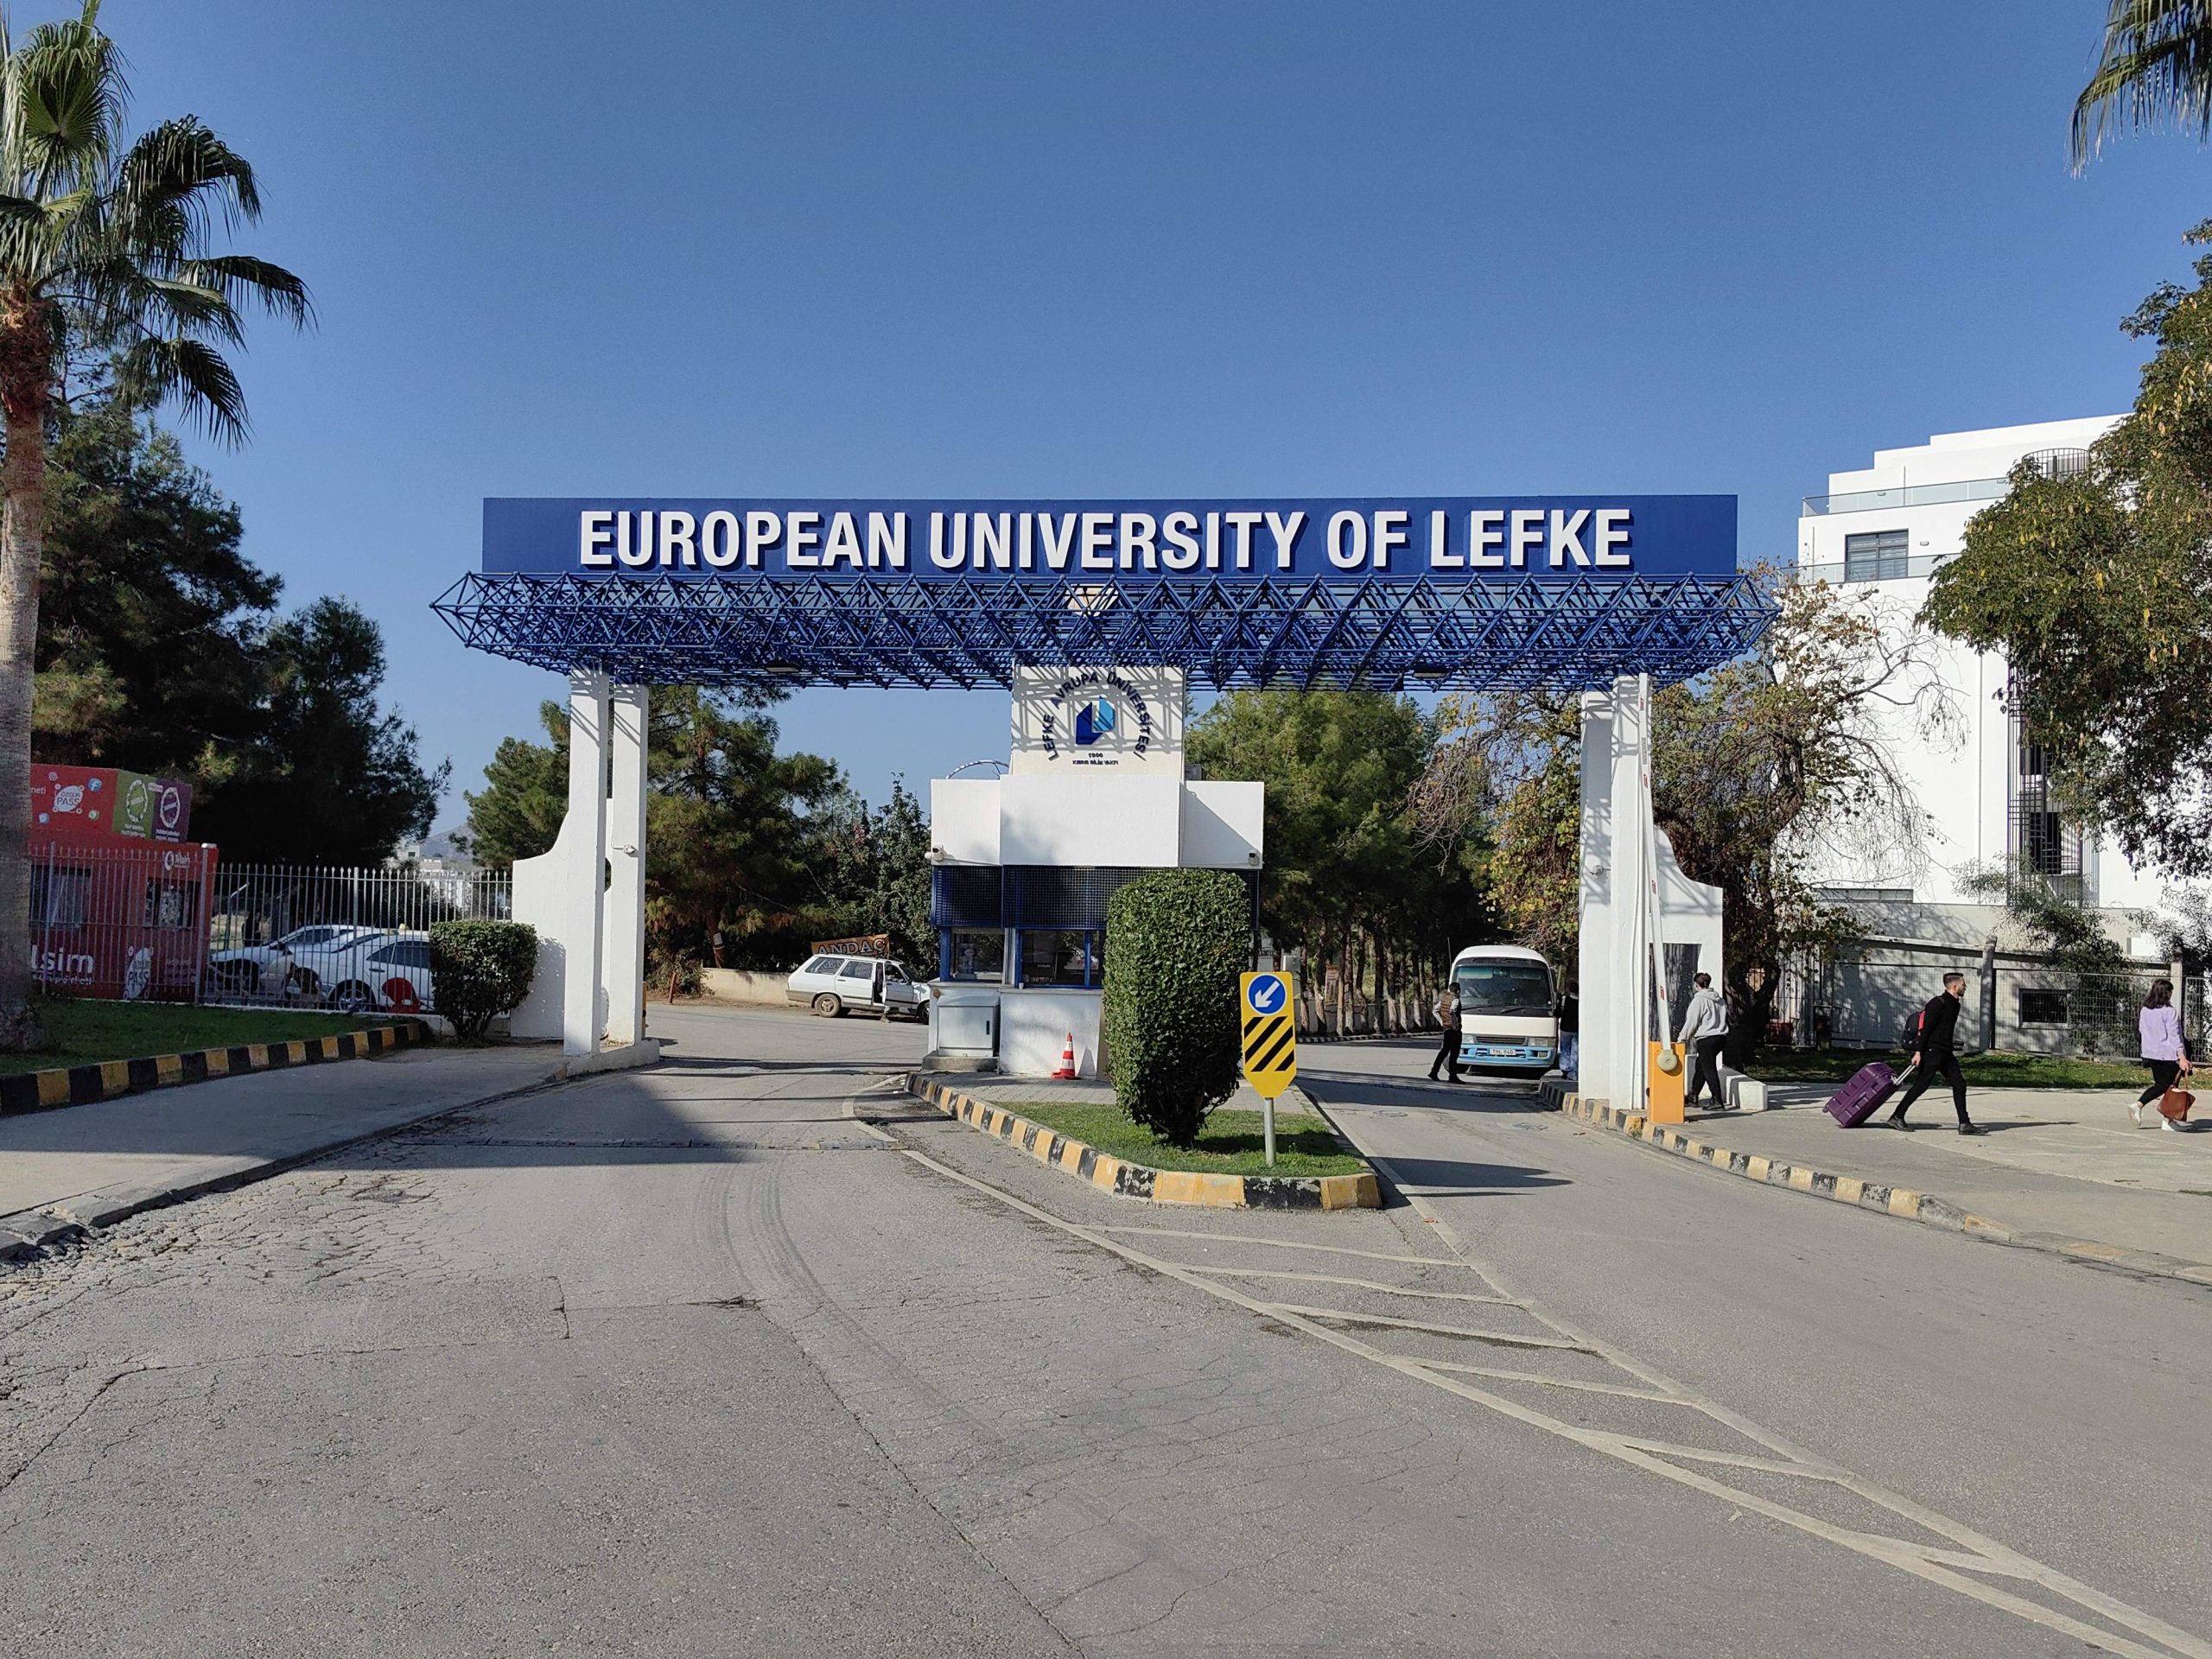 جامعة ليفكا الاوروبية